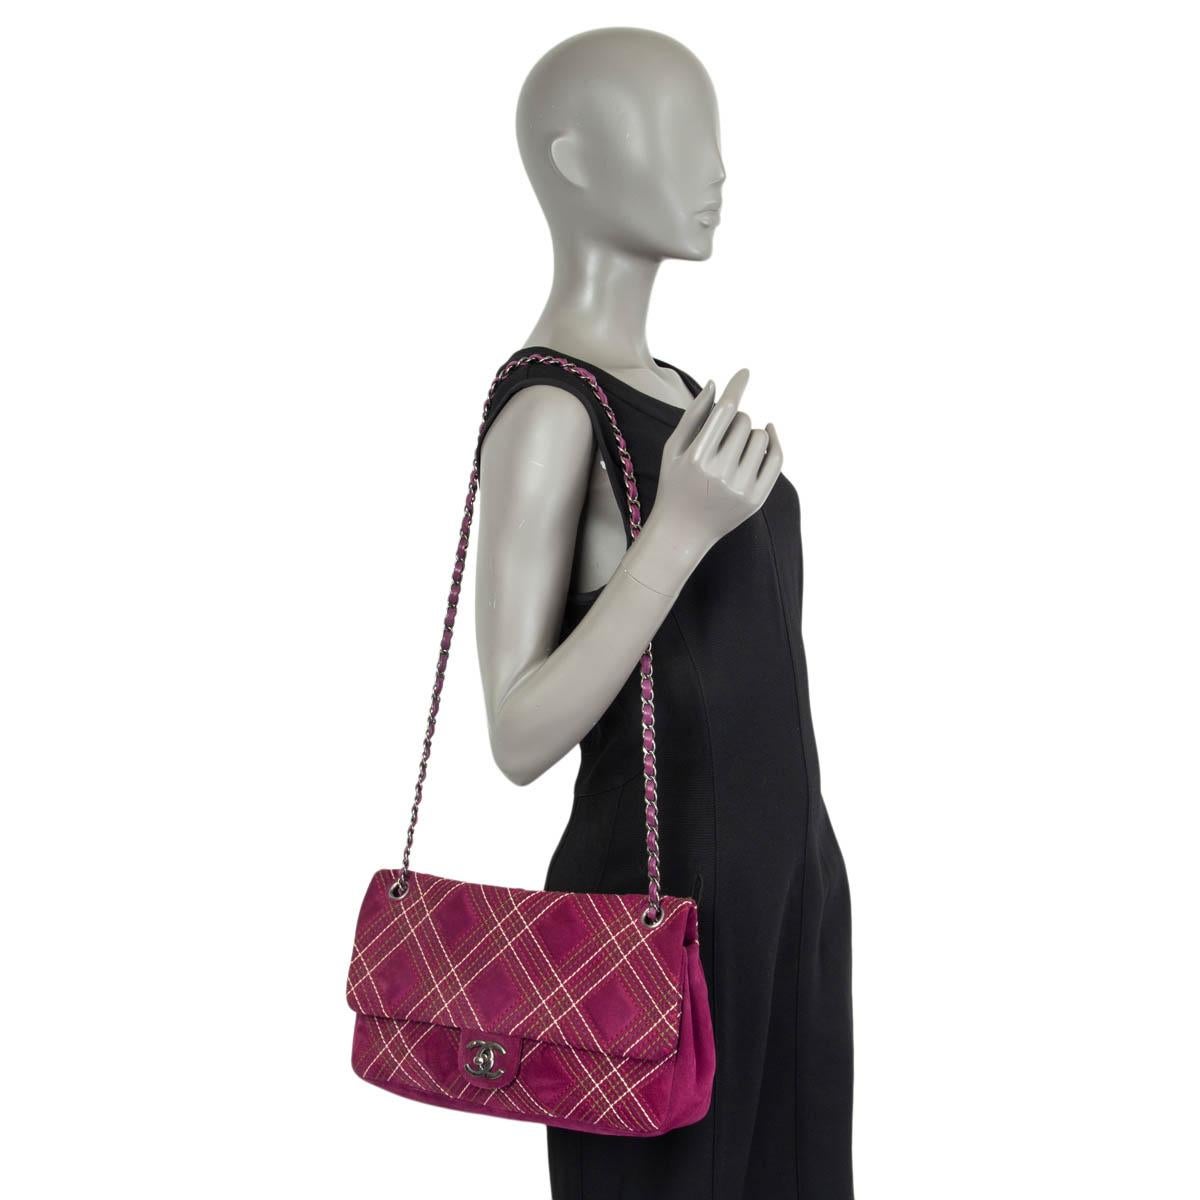 CHANLE purple suede 2013 EDINBURGH SALTIRE MEDIUM FLAP Shoulder Bag 13A For Sale 4